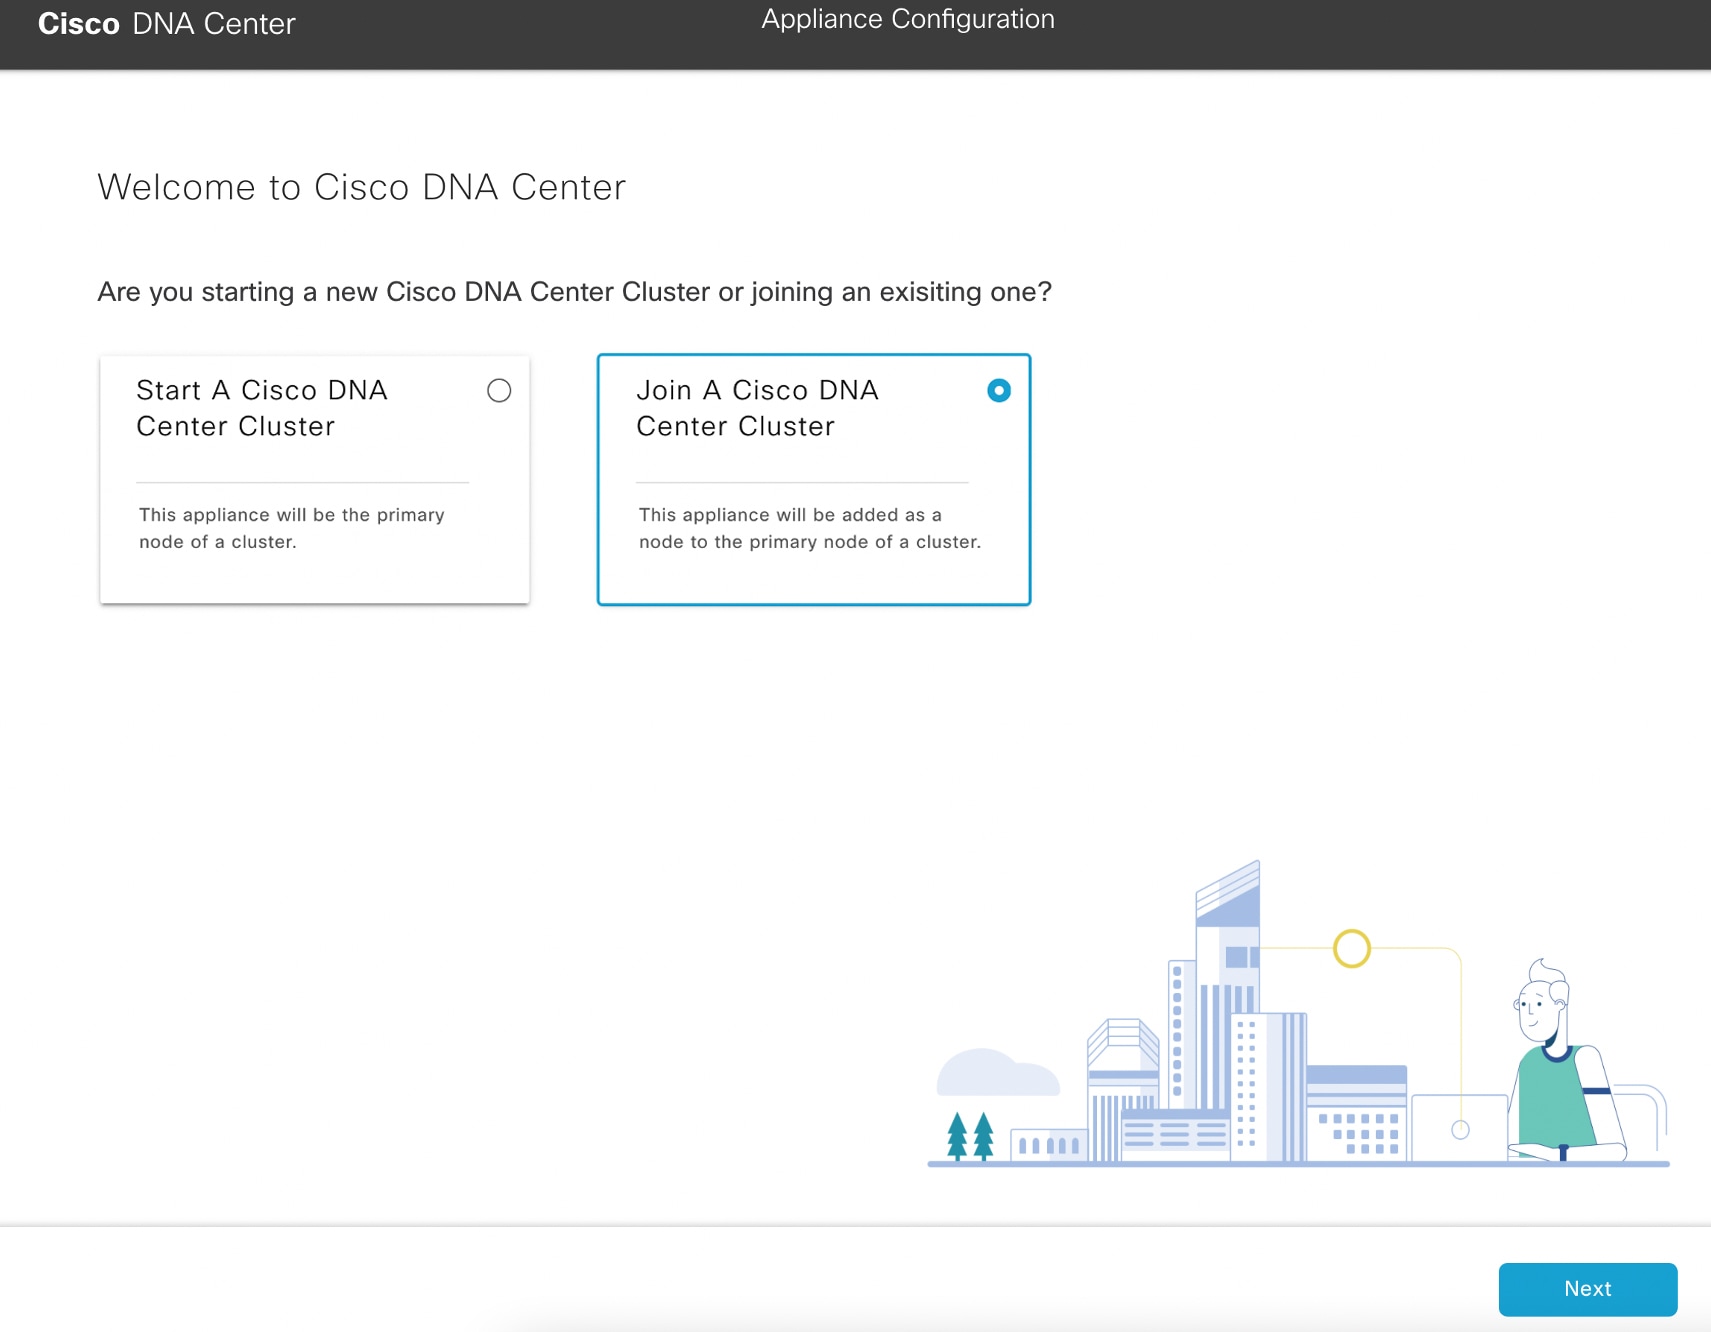 [Appliance Configuration] 画面に、Cisco DNA Center クラスタの開始と参加という 2 つのオプションが表示されます。